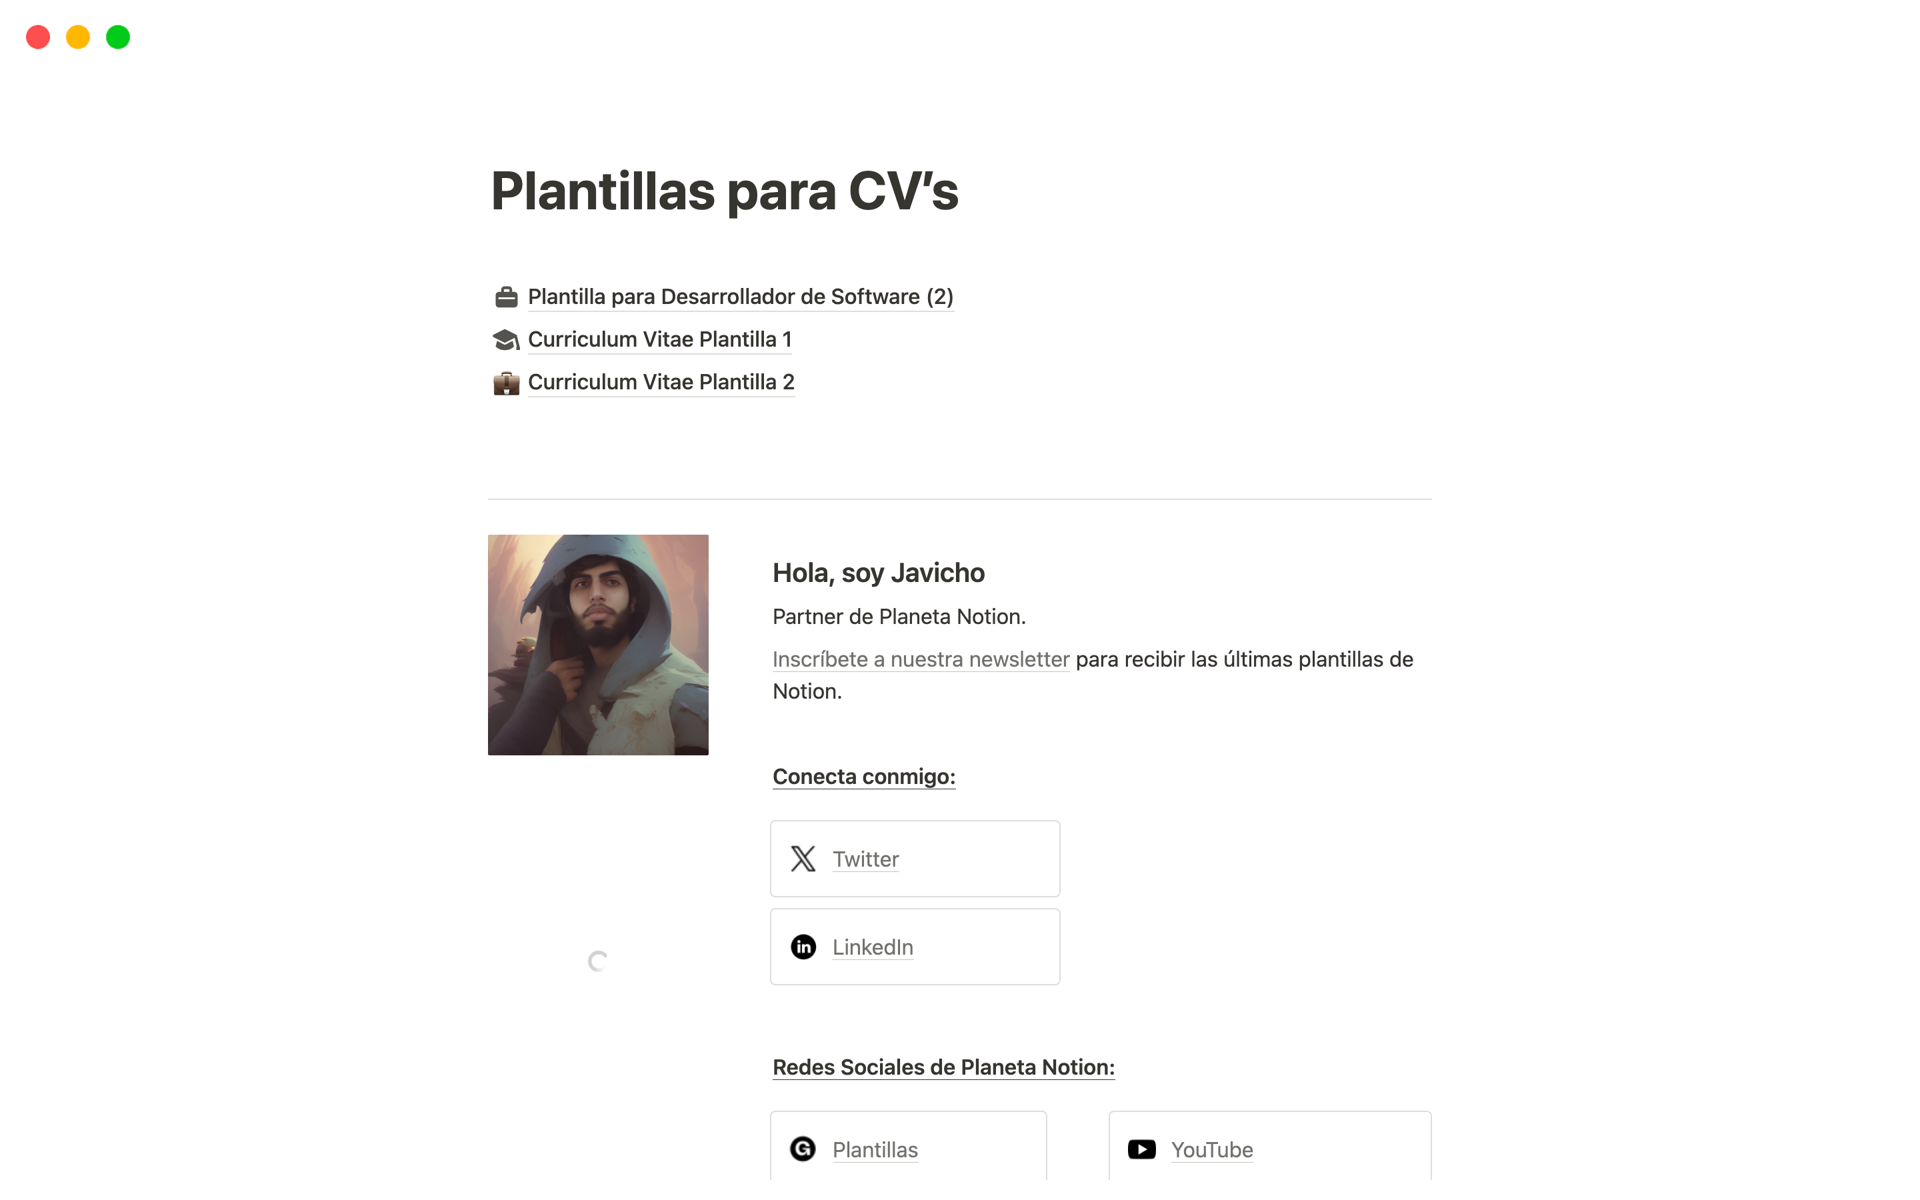 A template preview for Plantillas para CV’s